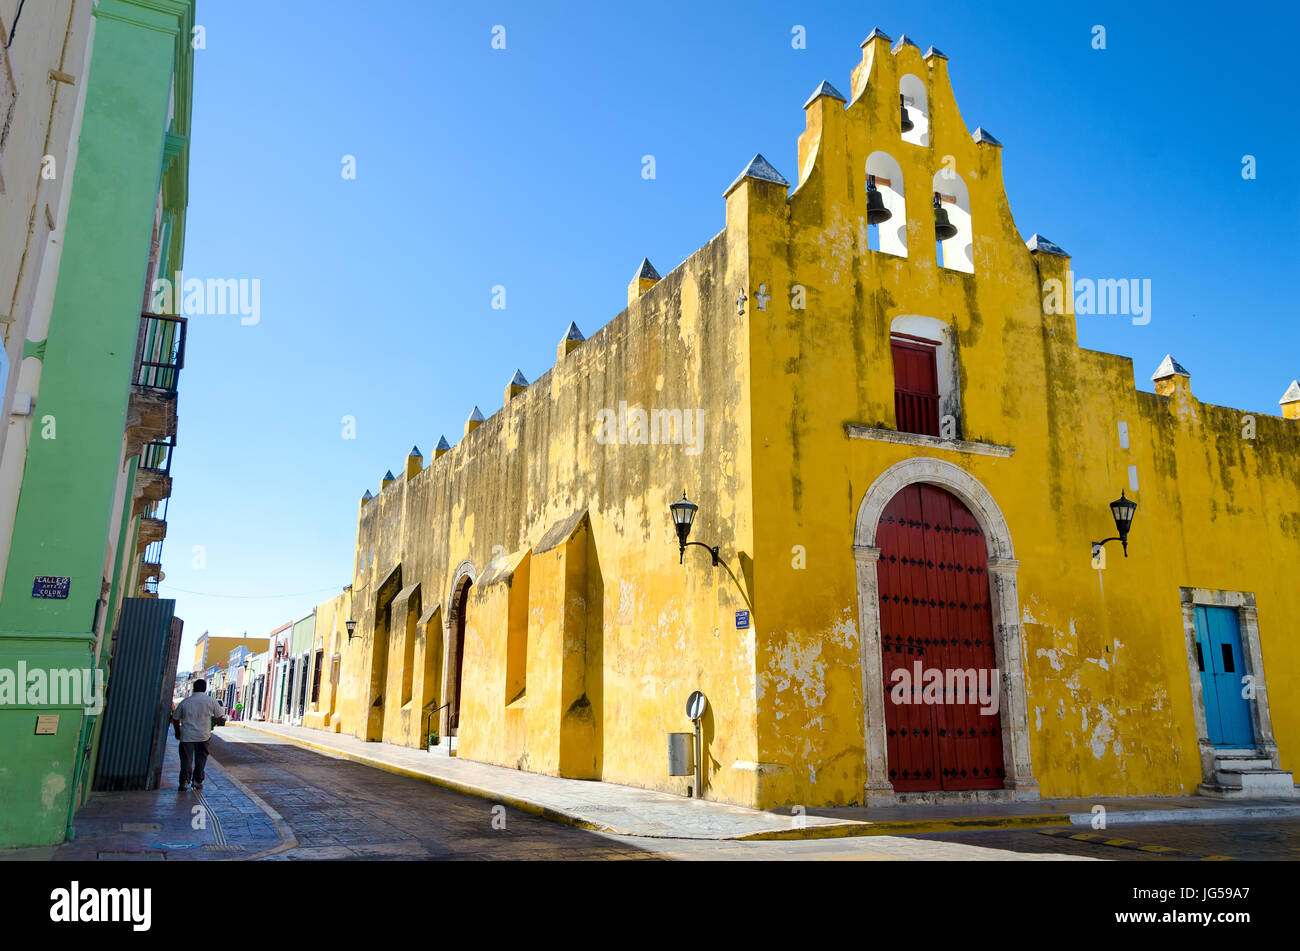 L'église et de l'architecture coloniale jaune à Campeche, Mexique Banque D'Images